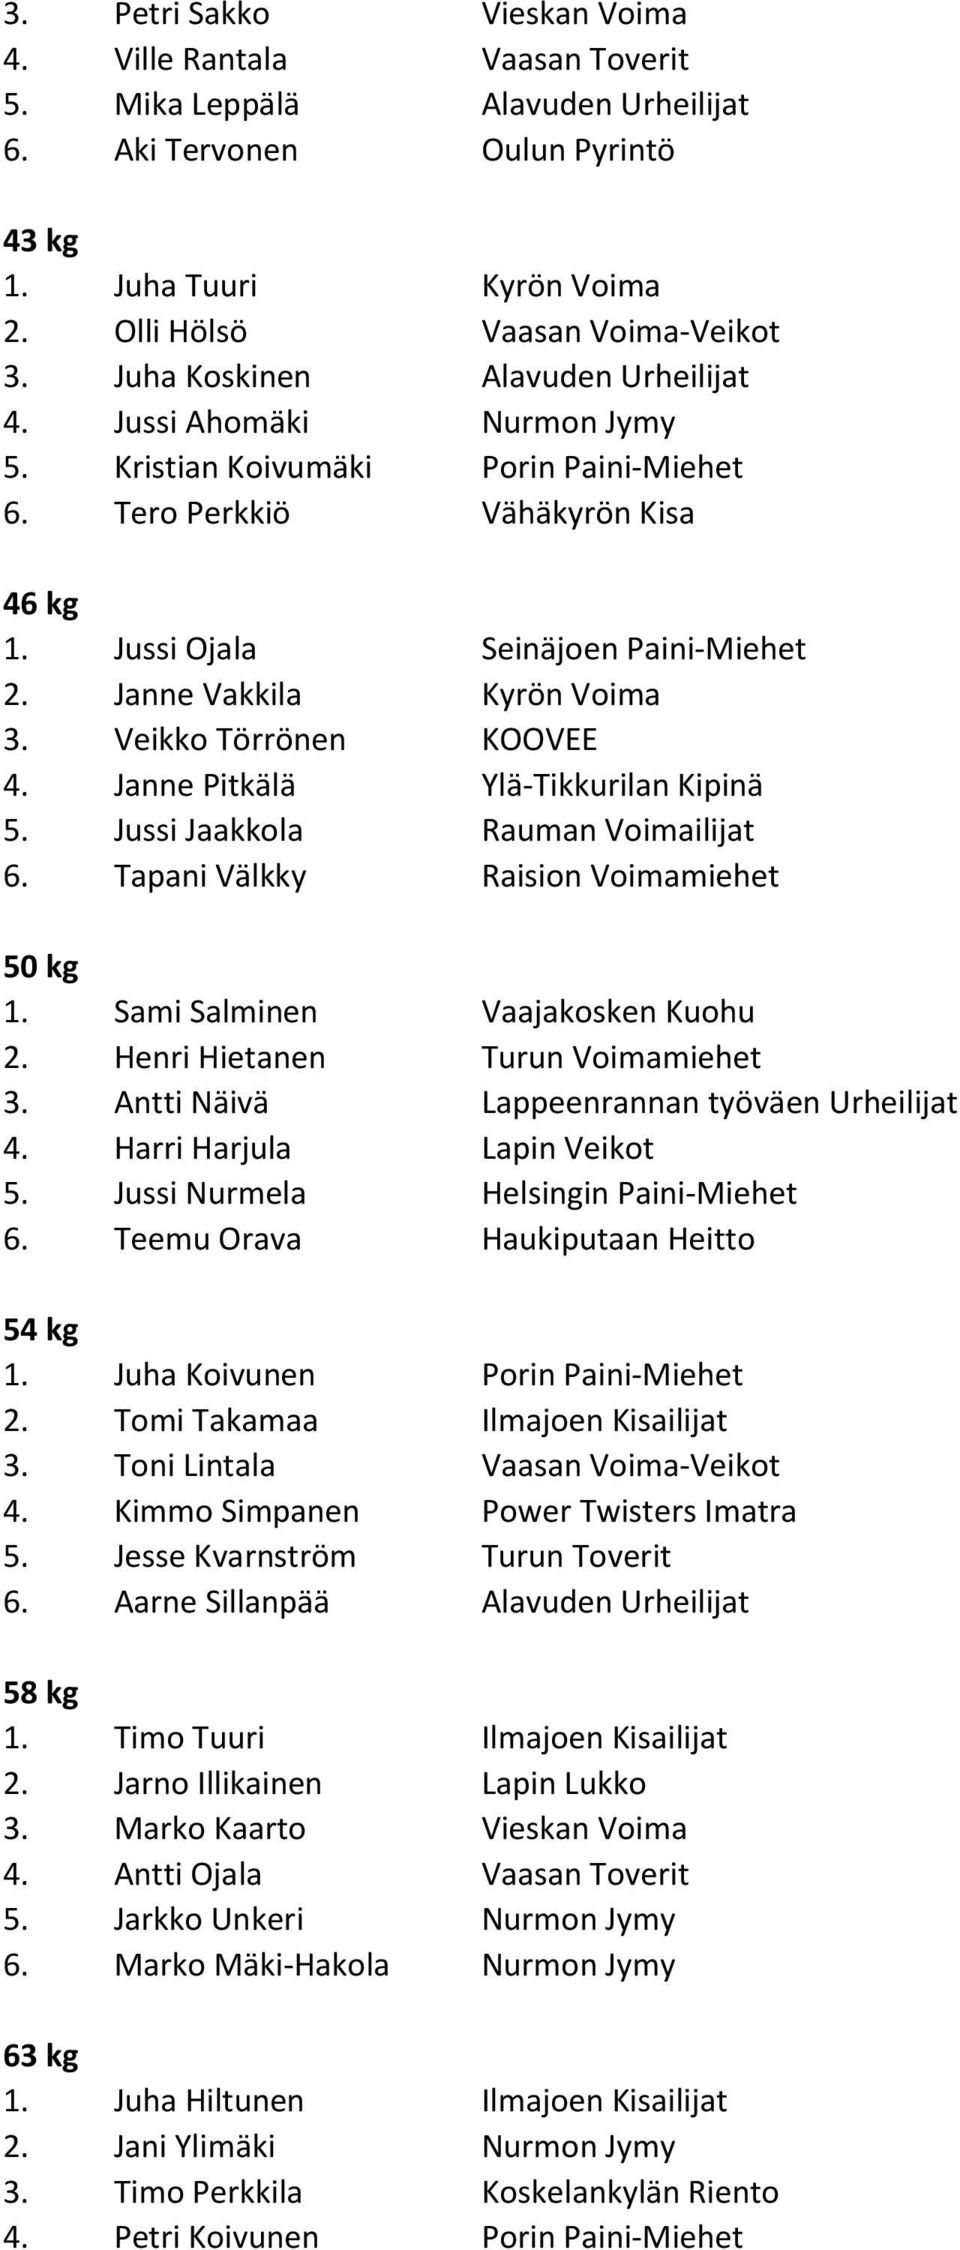 Janne Vakkila Kyrön Voima 3. Veikko Törrönen KOOVEE 4. Janne Pitkälä Ylä-Tikkurilan Kipinä 5. Jussi Jaakkola Rauman Voimailijat 6. Tapani Välkky Raision Voimamiehet 50 kg 1.